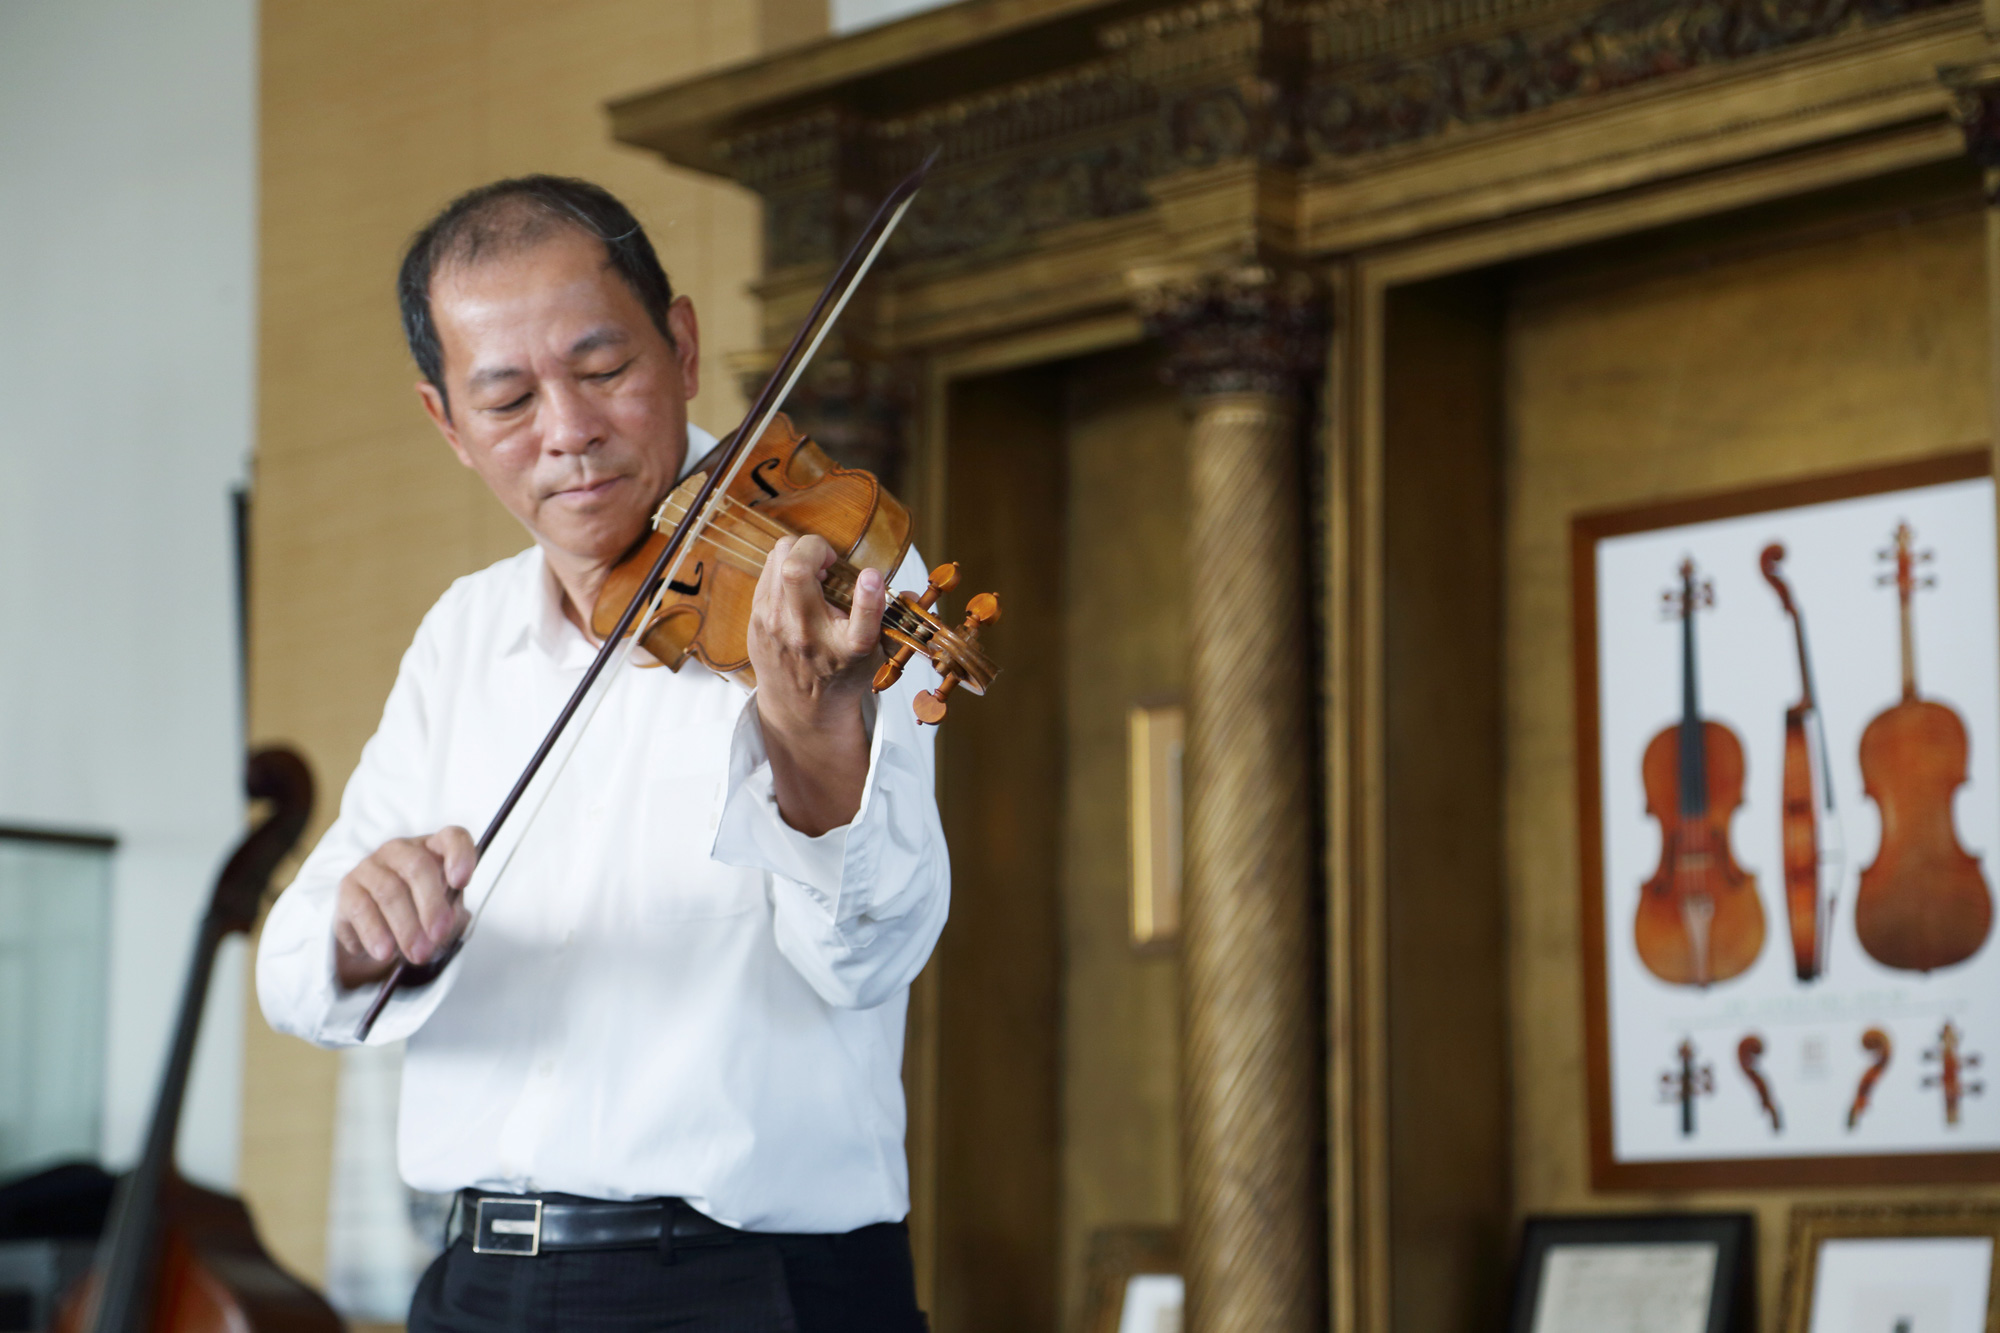 奇美博物館首席提琴顧問鍾岱廷解釋，羊腸弦讓古琴在音色上變得較堅實與溫潤，加上當時提琴的設計，使得整體音階較現代琴少半音。（攝影／王士豪）